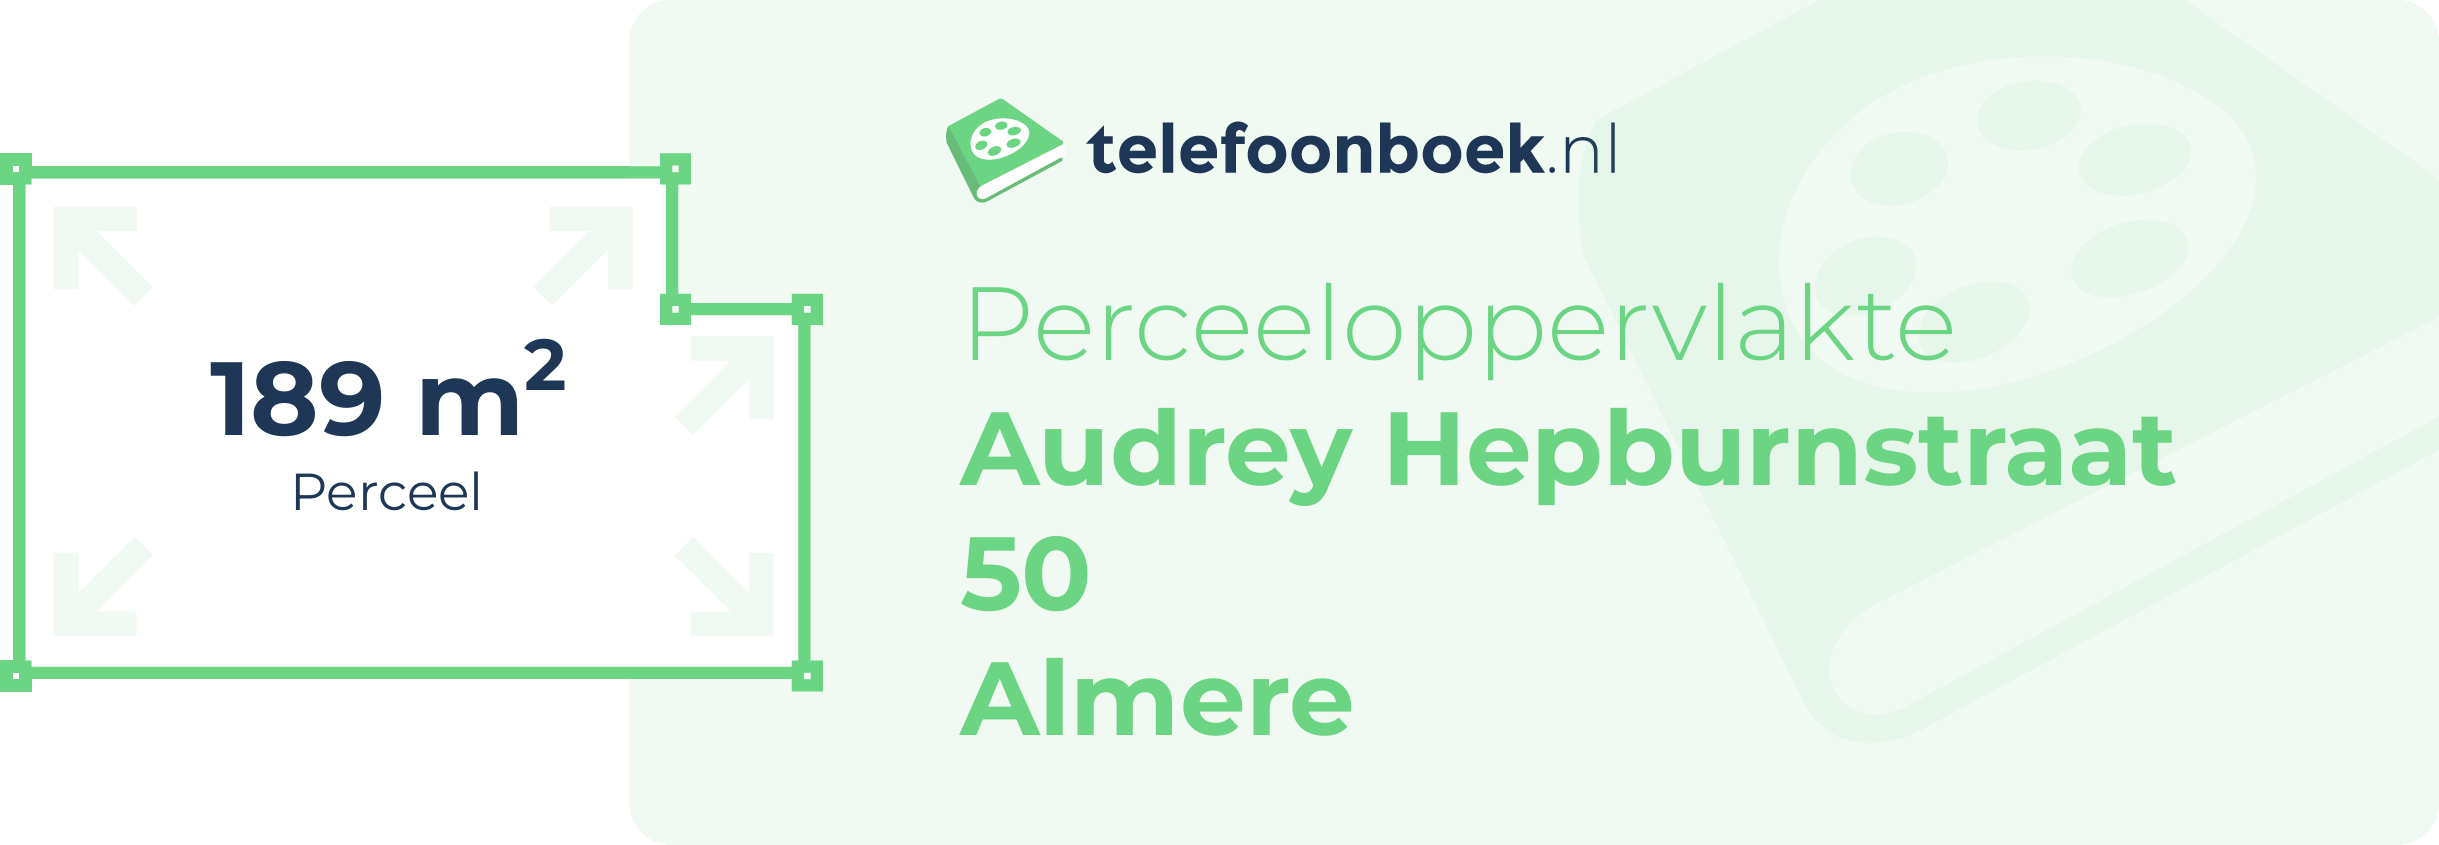 Perceeloppervlakte Audrey Hepburnstraat 50 Almere